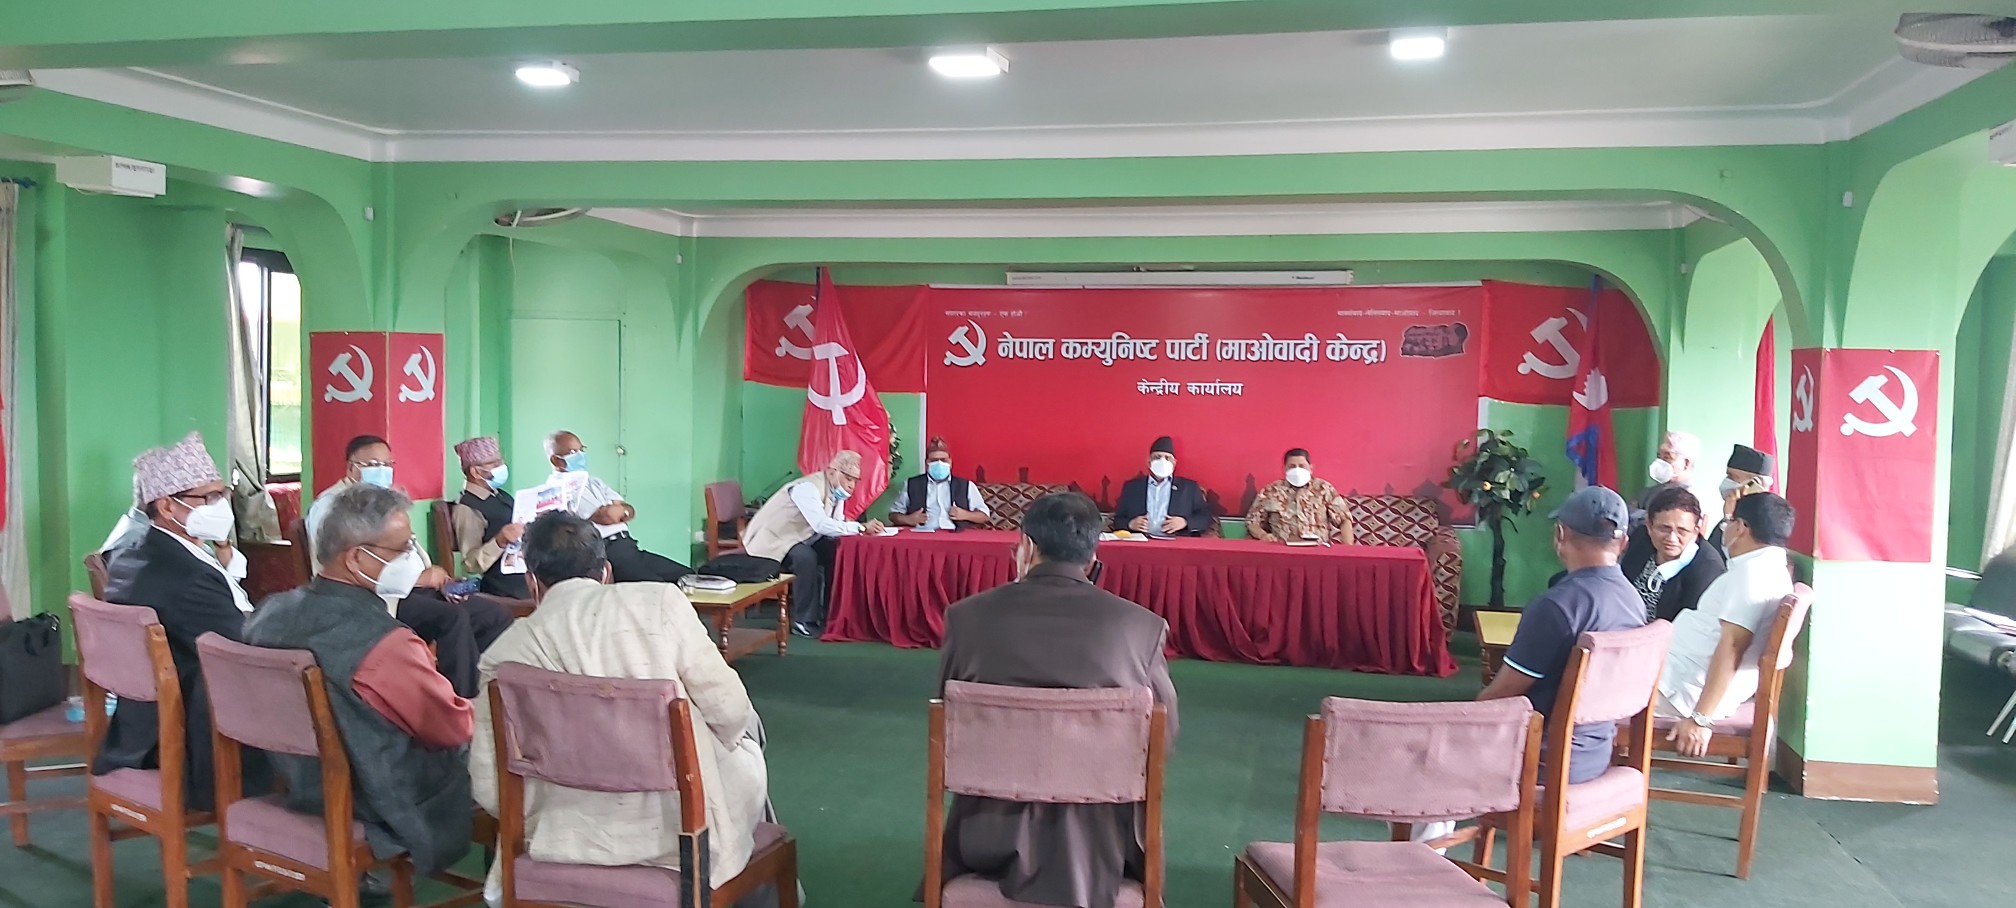 माओवादी केन्द्रकाे स्थायी कमिटी बैठक: न्यूनतम साझा कार्यक्रममार्फत सरकारलाई सञ्चालन गर्ने निर्णय